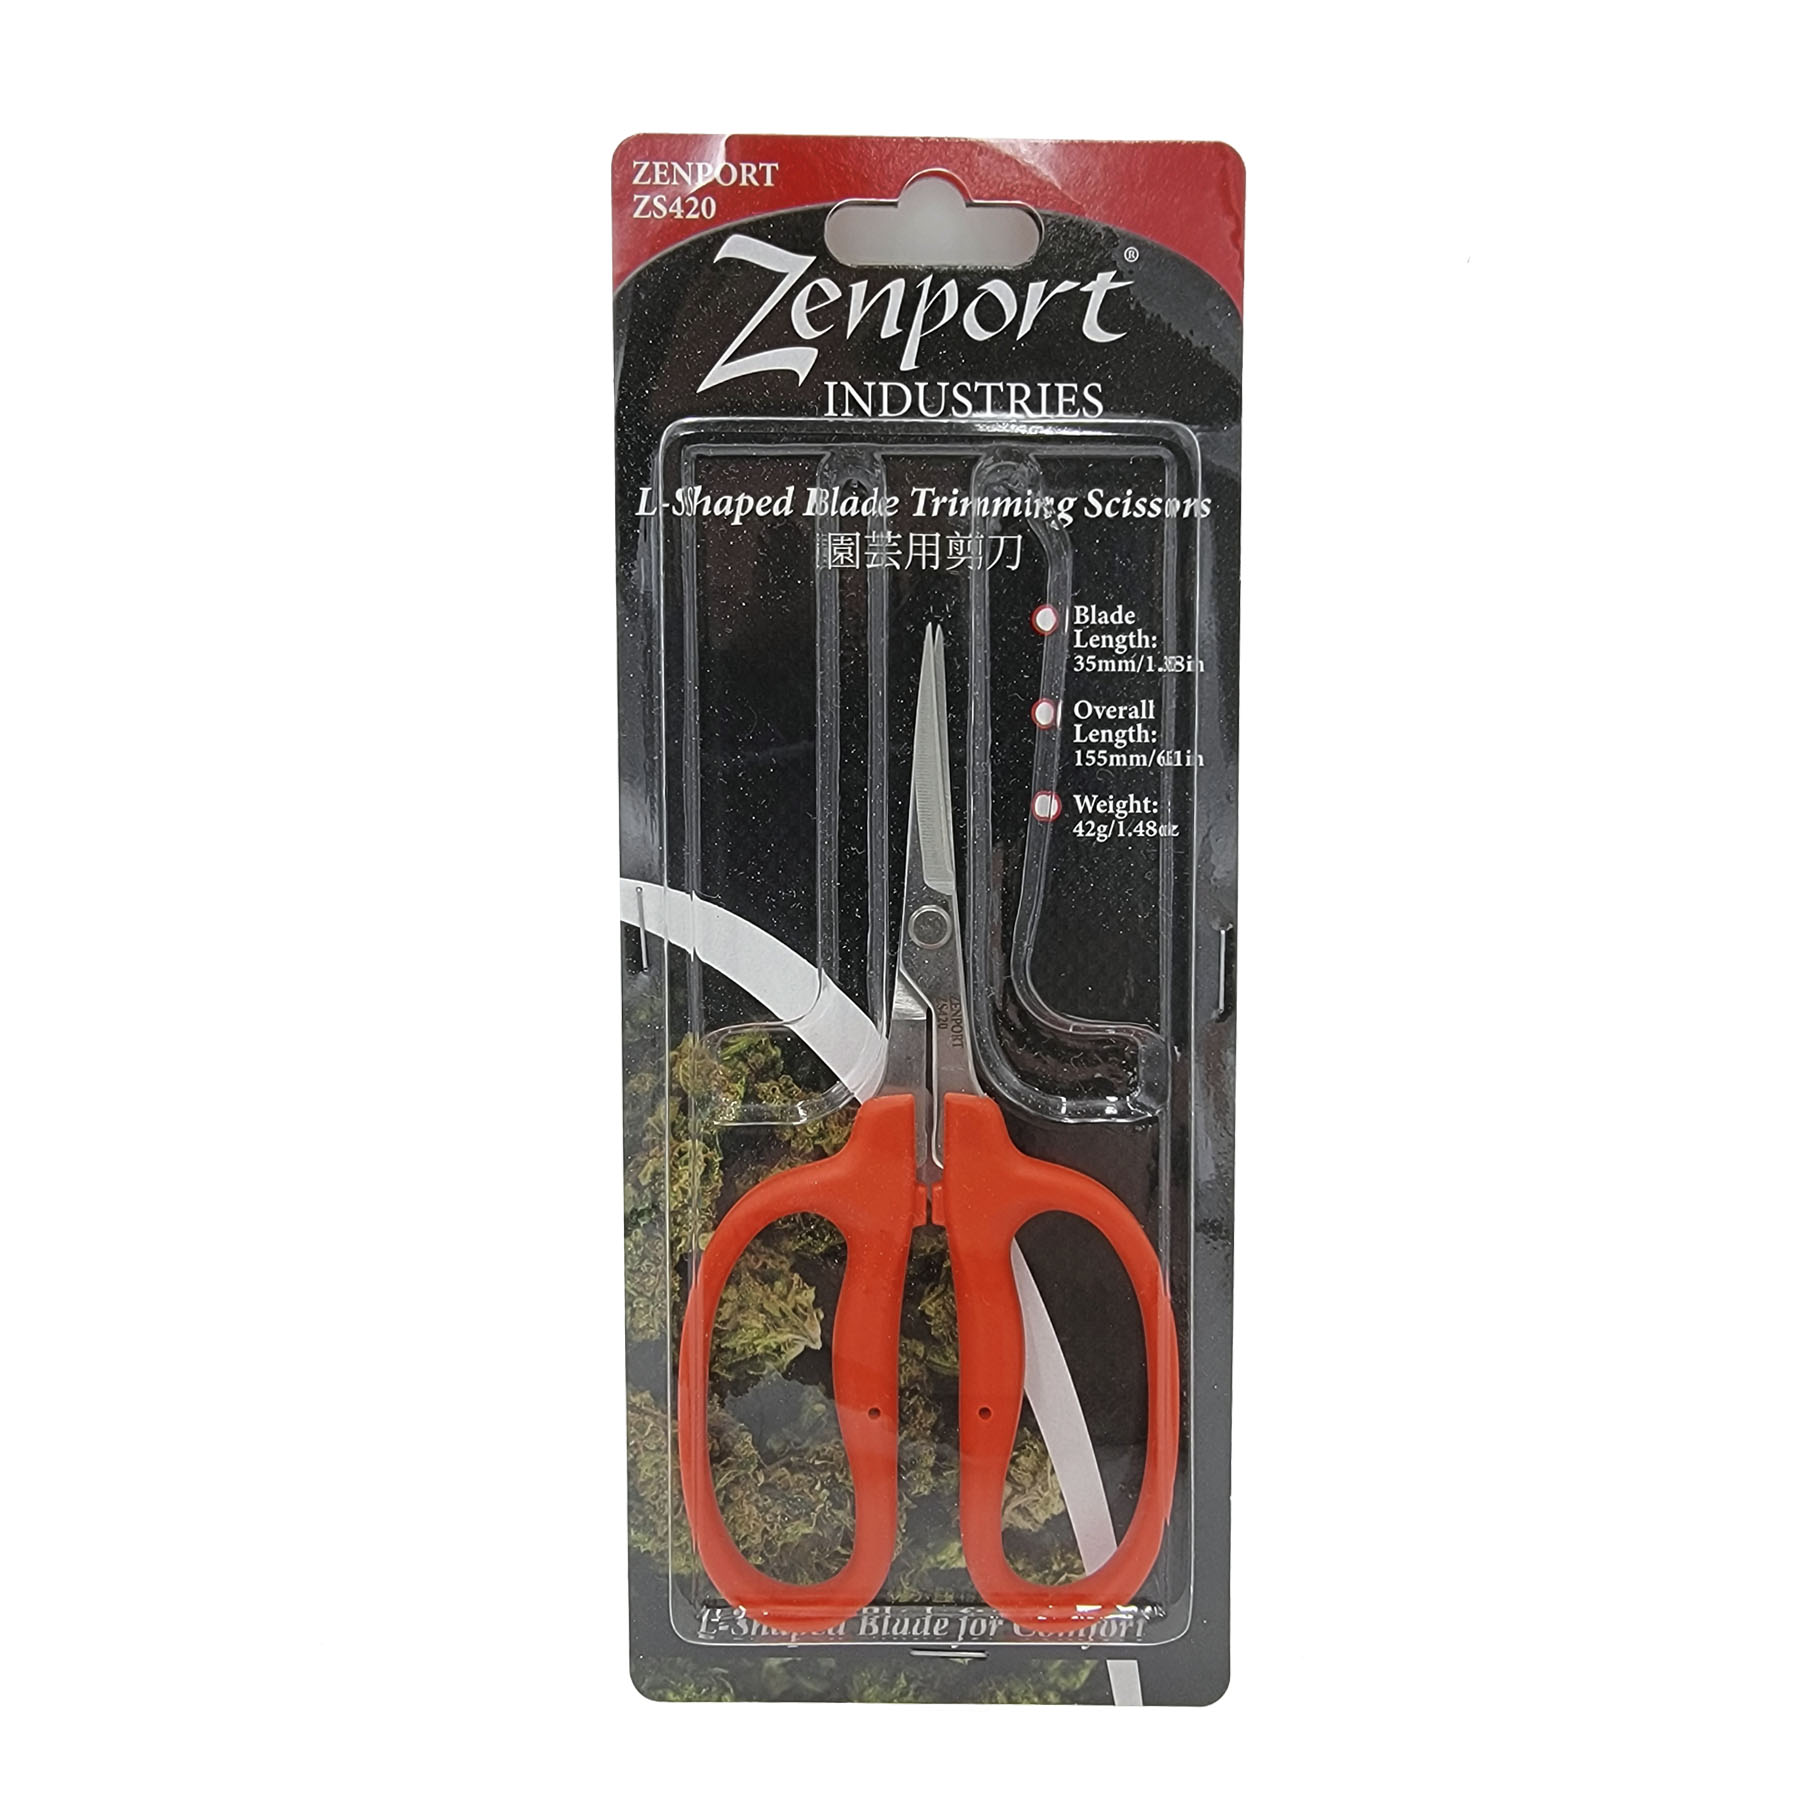 Zenport Zs109b Ergonomic Bent Handle Deluxe Trimming Scissors